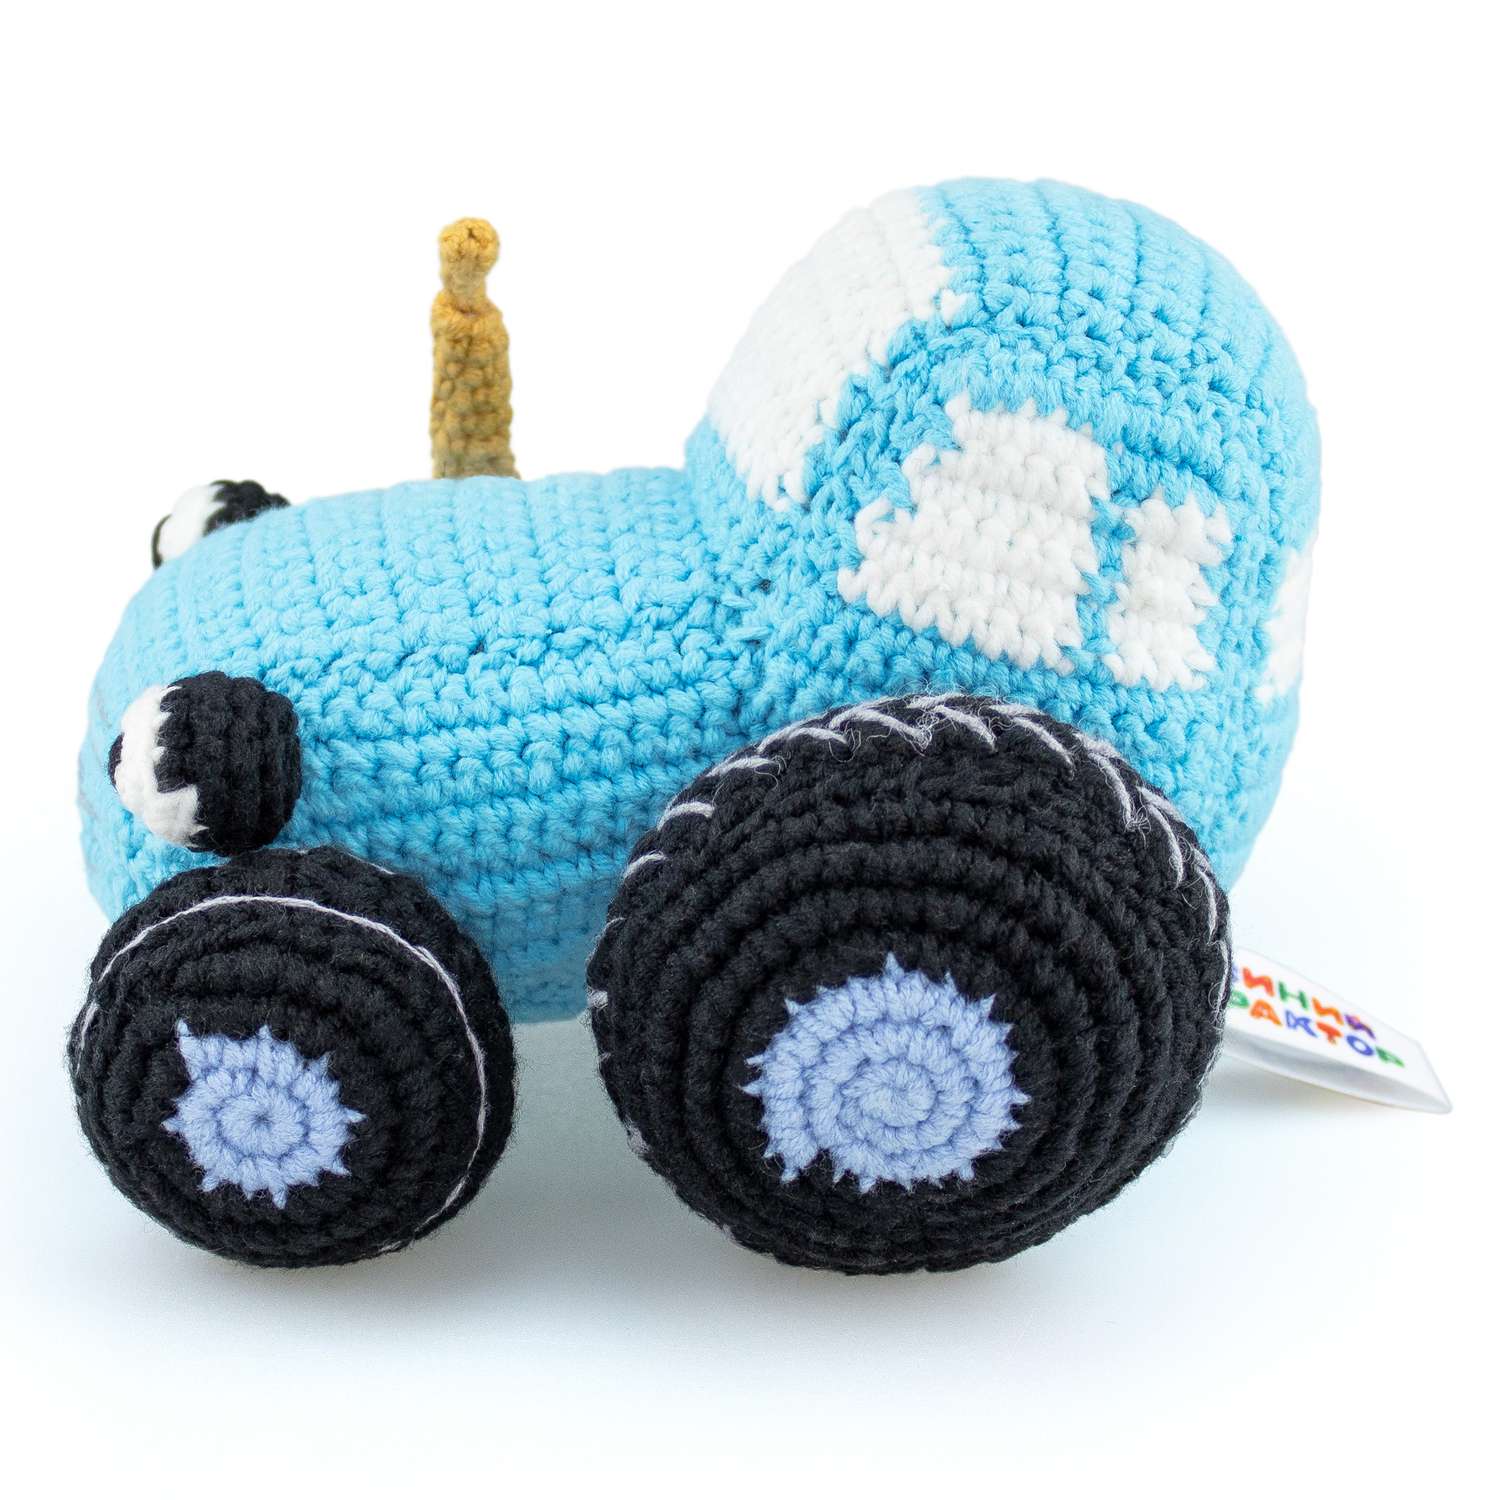 Мягкая игрушка Синий трактор вязаная игрушка Синий Трактор - фото 2